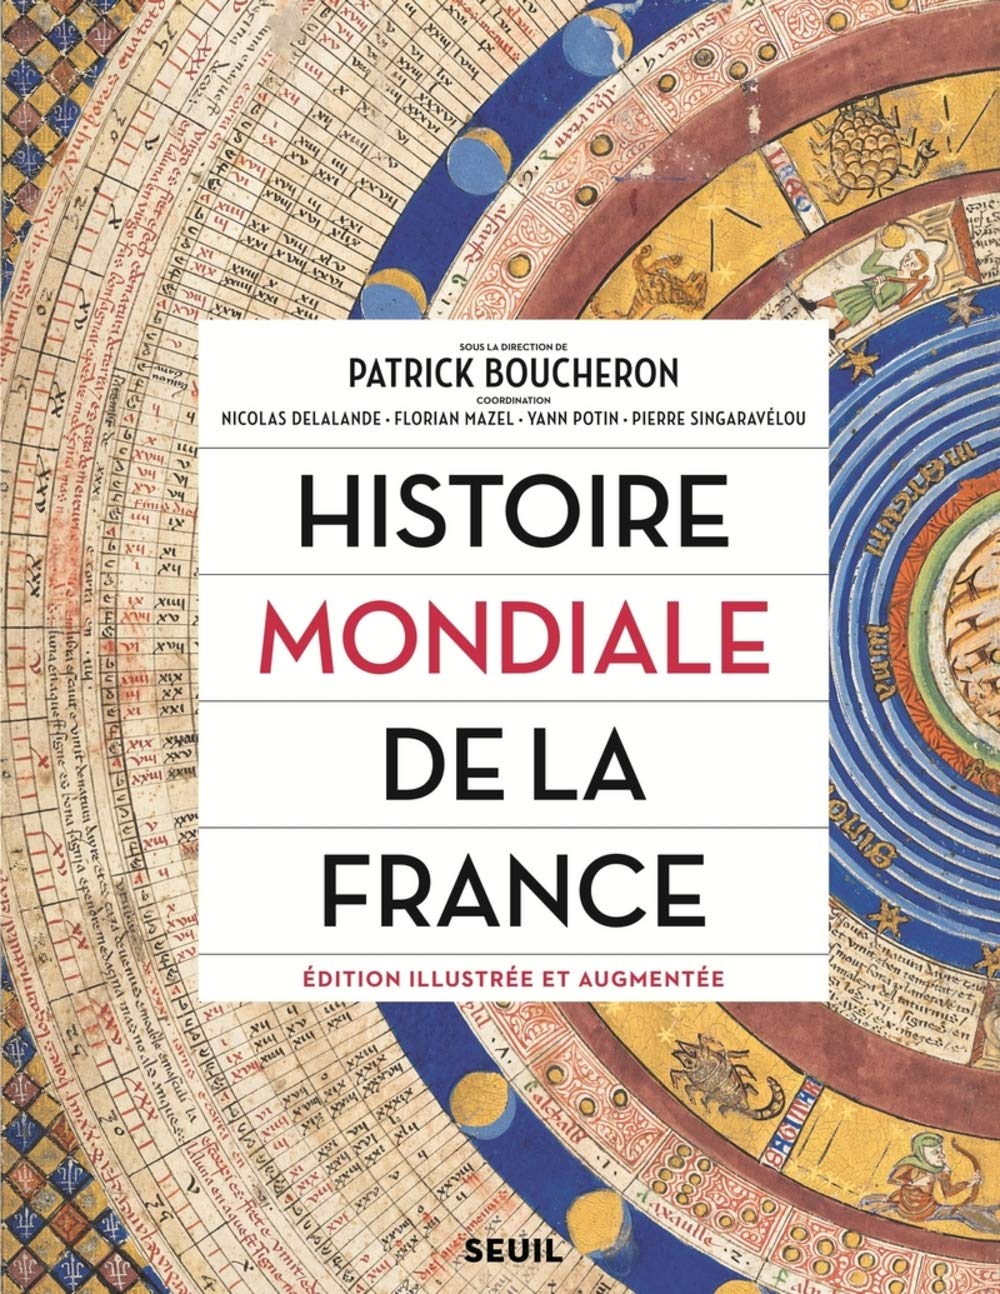 Histoire mondiale de la France, 2018, édition illustrée et augmentée, 800 p.